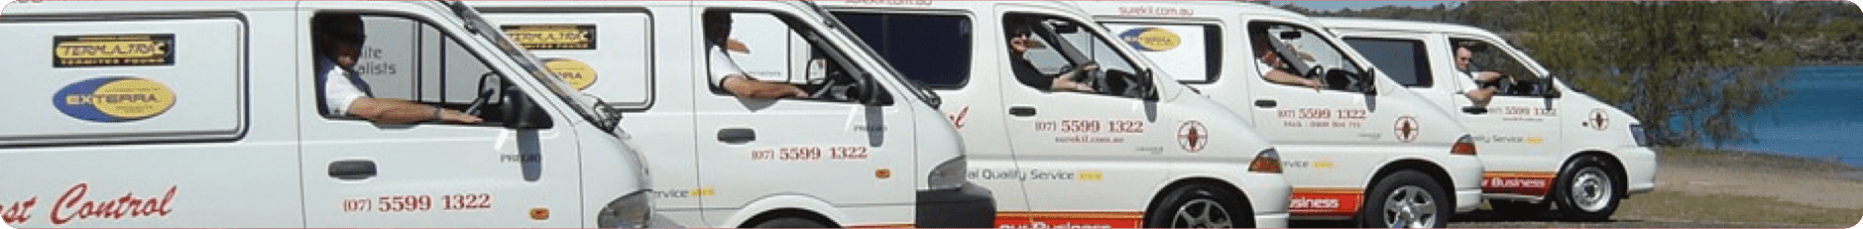 Fleet of Pest Control Vans — Surekil Pest Control In Tweed Heads, NSW